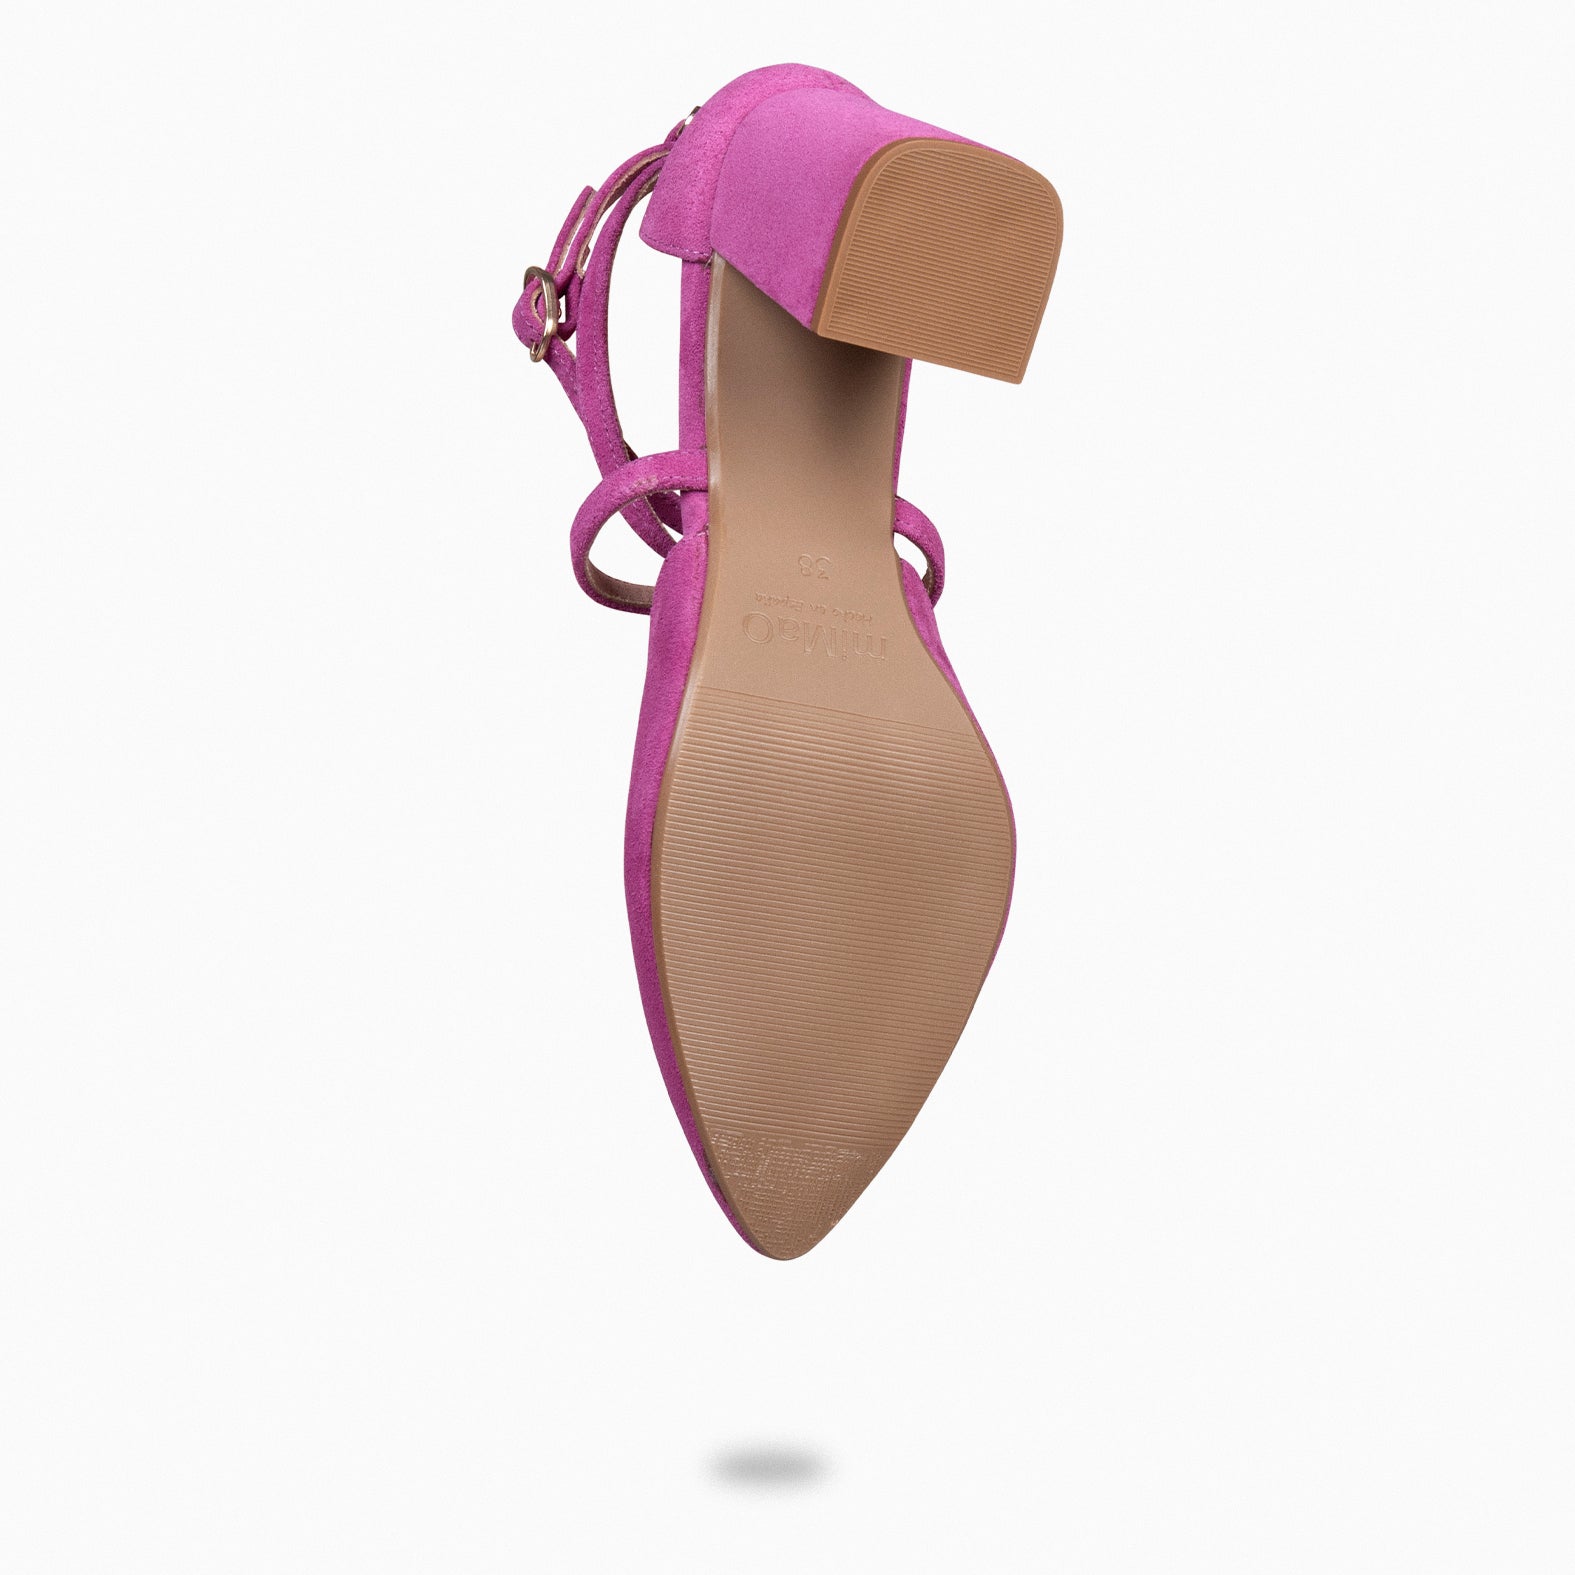 ARIEL – FUCHSIA Wide heel shoe